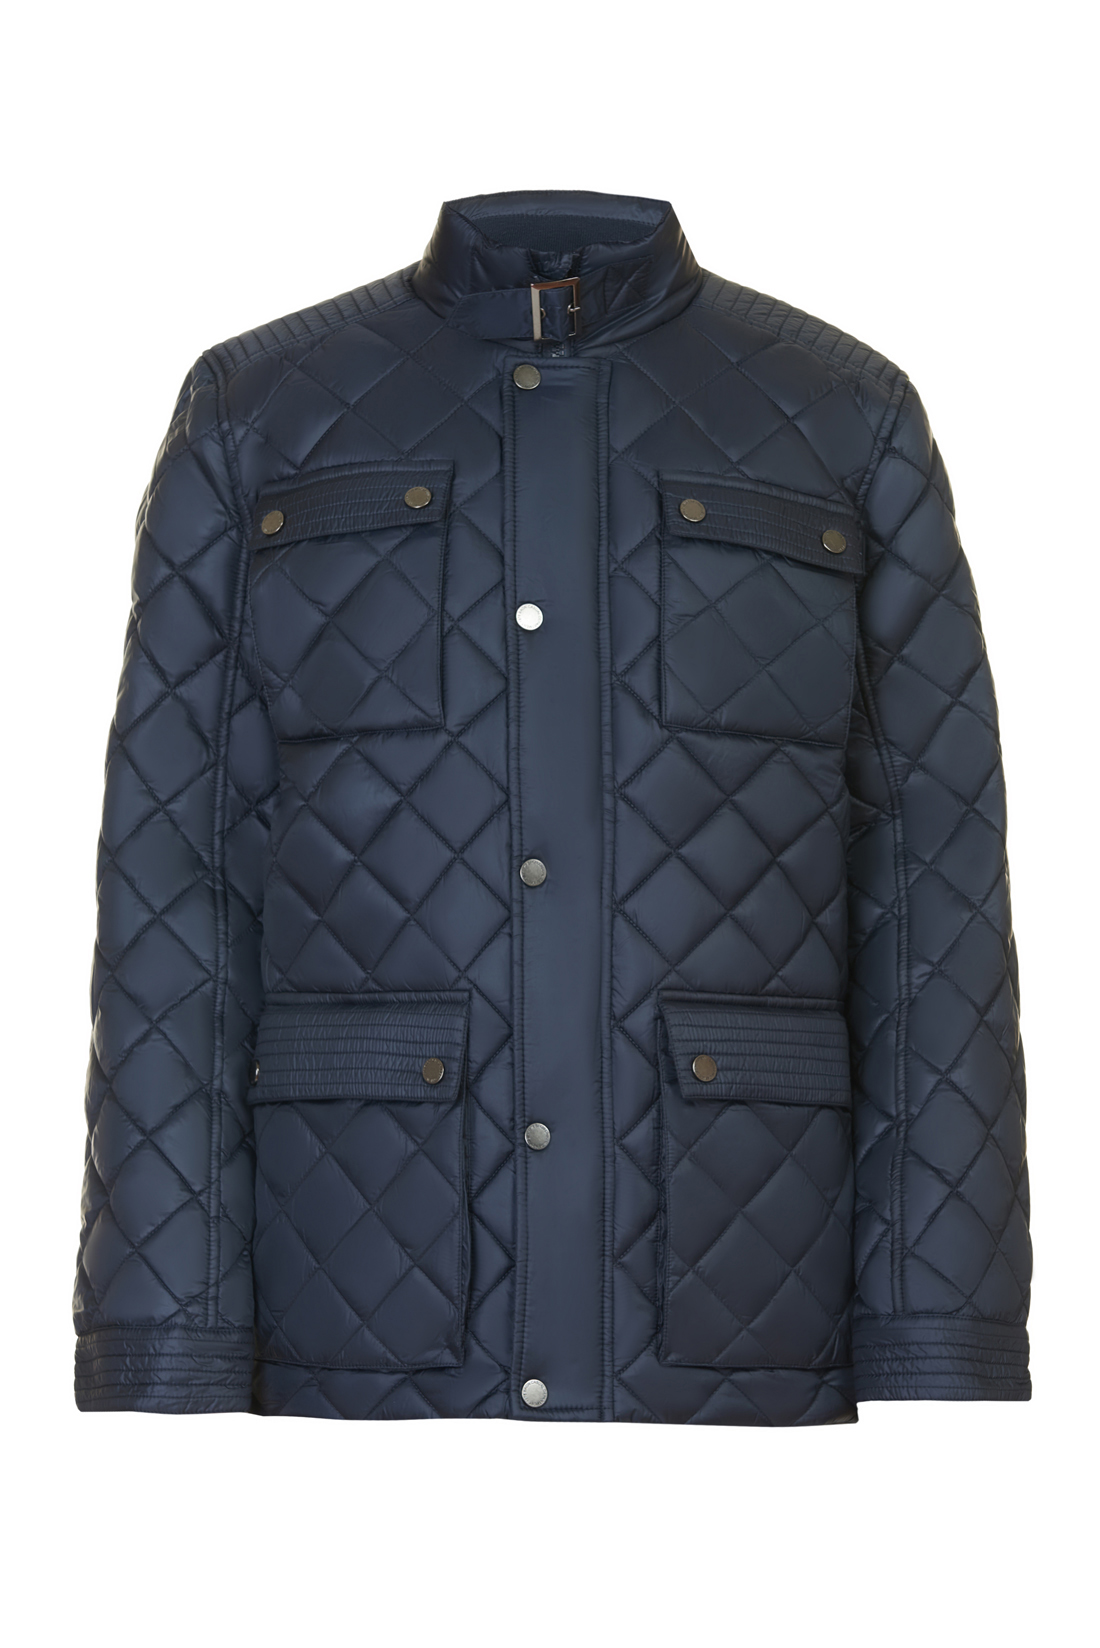 Стёганая куртка с металлической фурнитурой (арт. baon B537550), размер XXL, цвет синий Стёганая куртка с металлической фурнитурой (арт. baon B537550) - фото 3